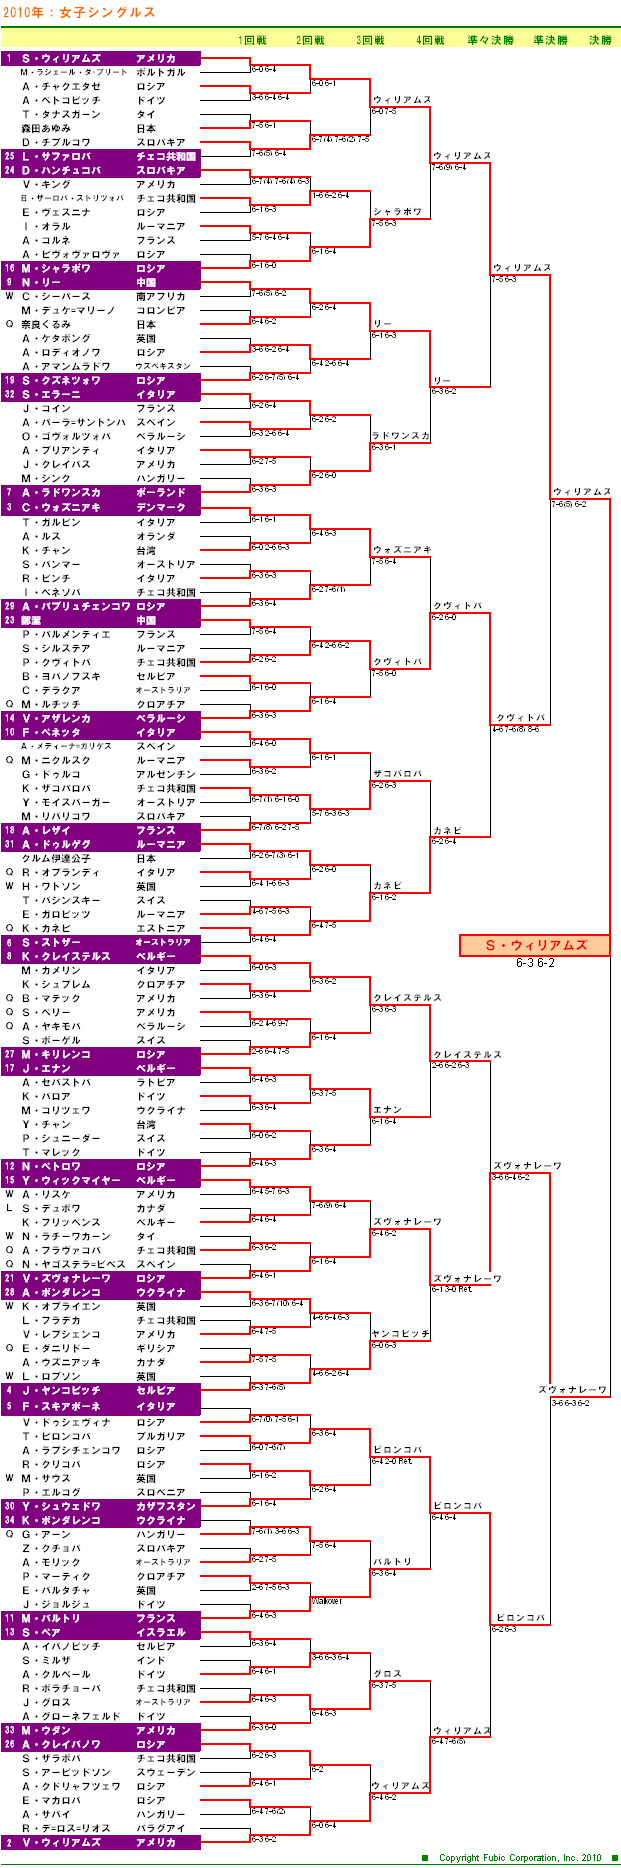 ウィンブルドンテニス2010　女子シングルスドロー表